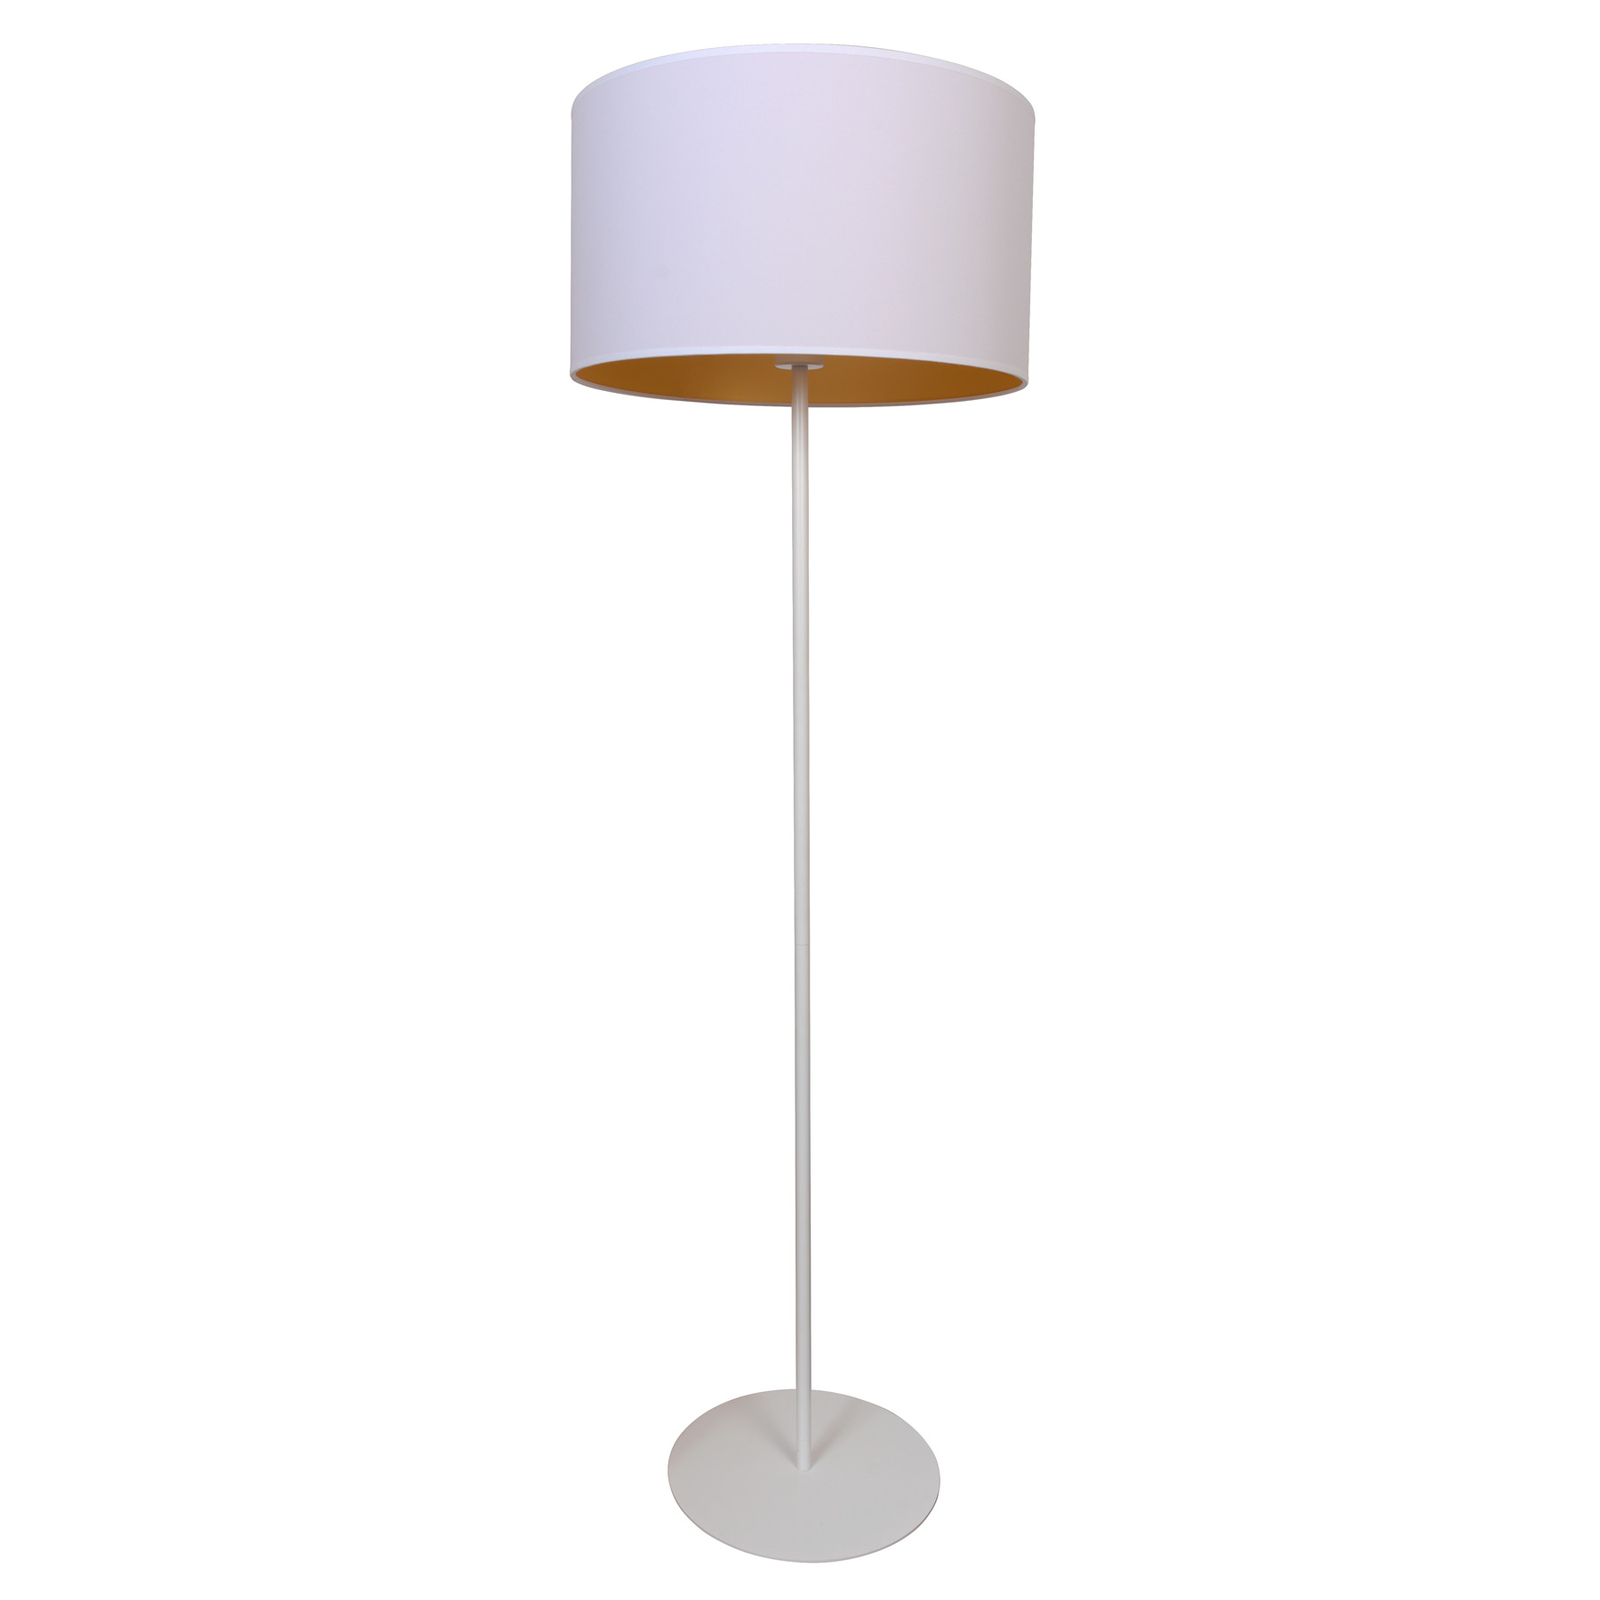 Lampa stojąca Roller, biała/złota, 145 cm